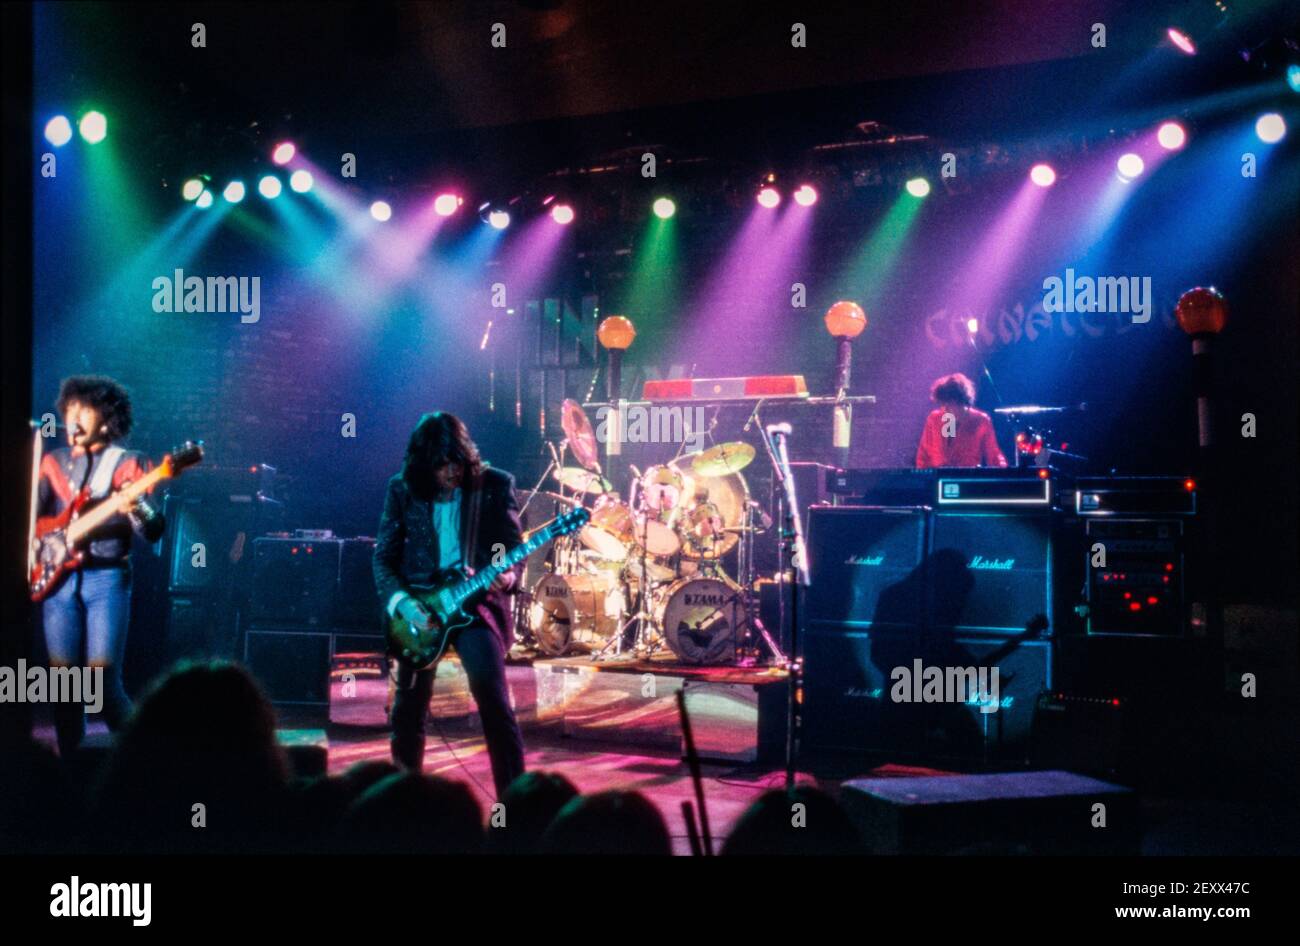 NIJMEGEN, PAÍSES BAJOS - 13 FEB, 1981 : Thin Lizzy protagonizada por el bajista Phil Lynott en vivo durante un concierto en los países Bajos. Foto de stock